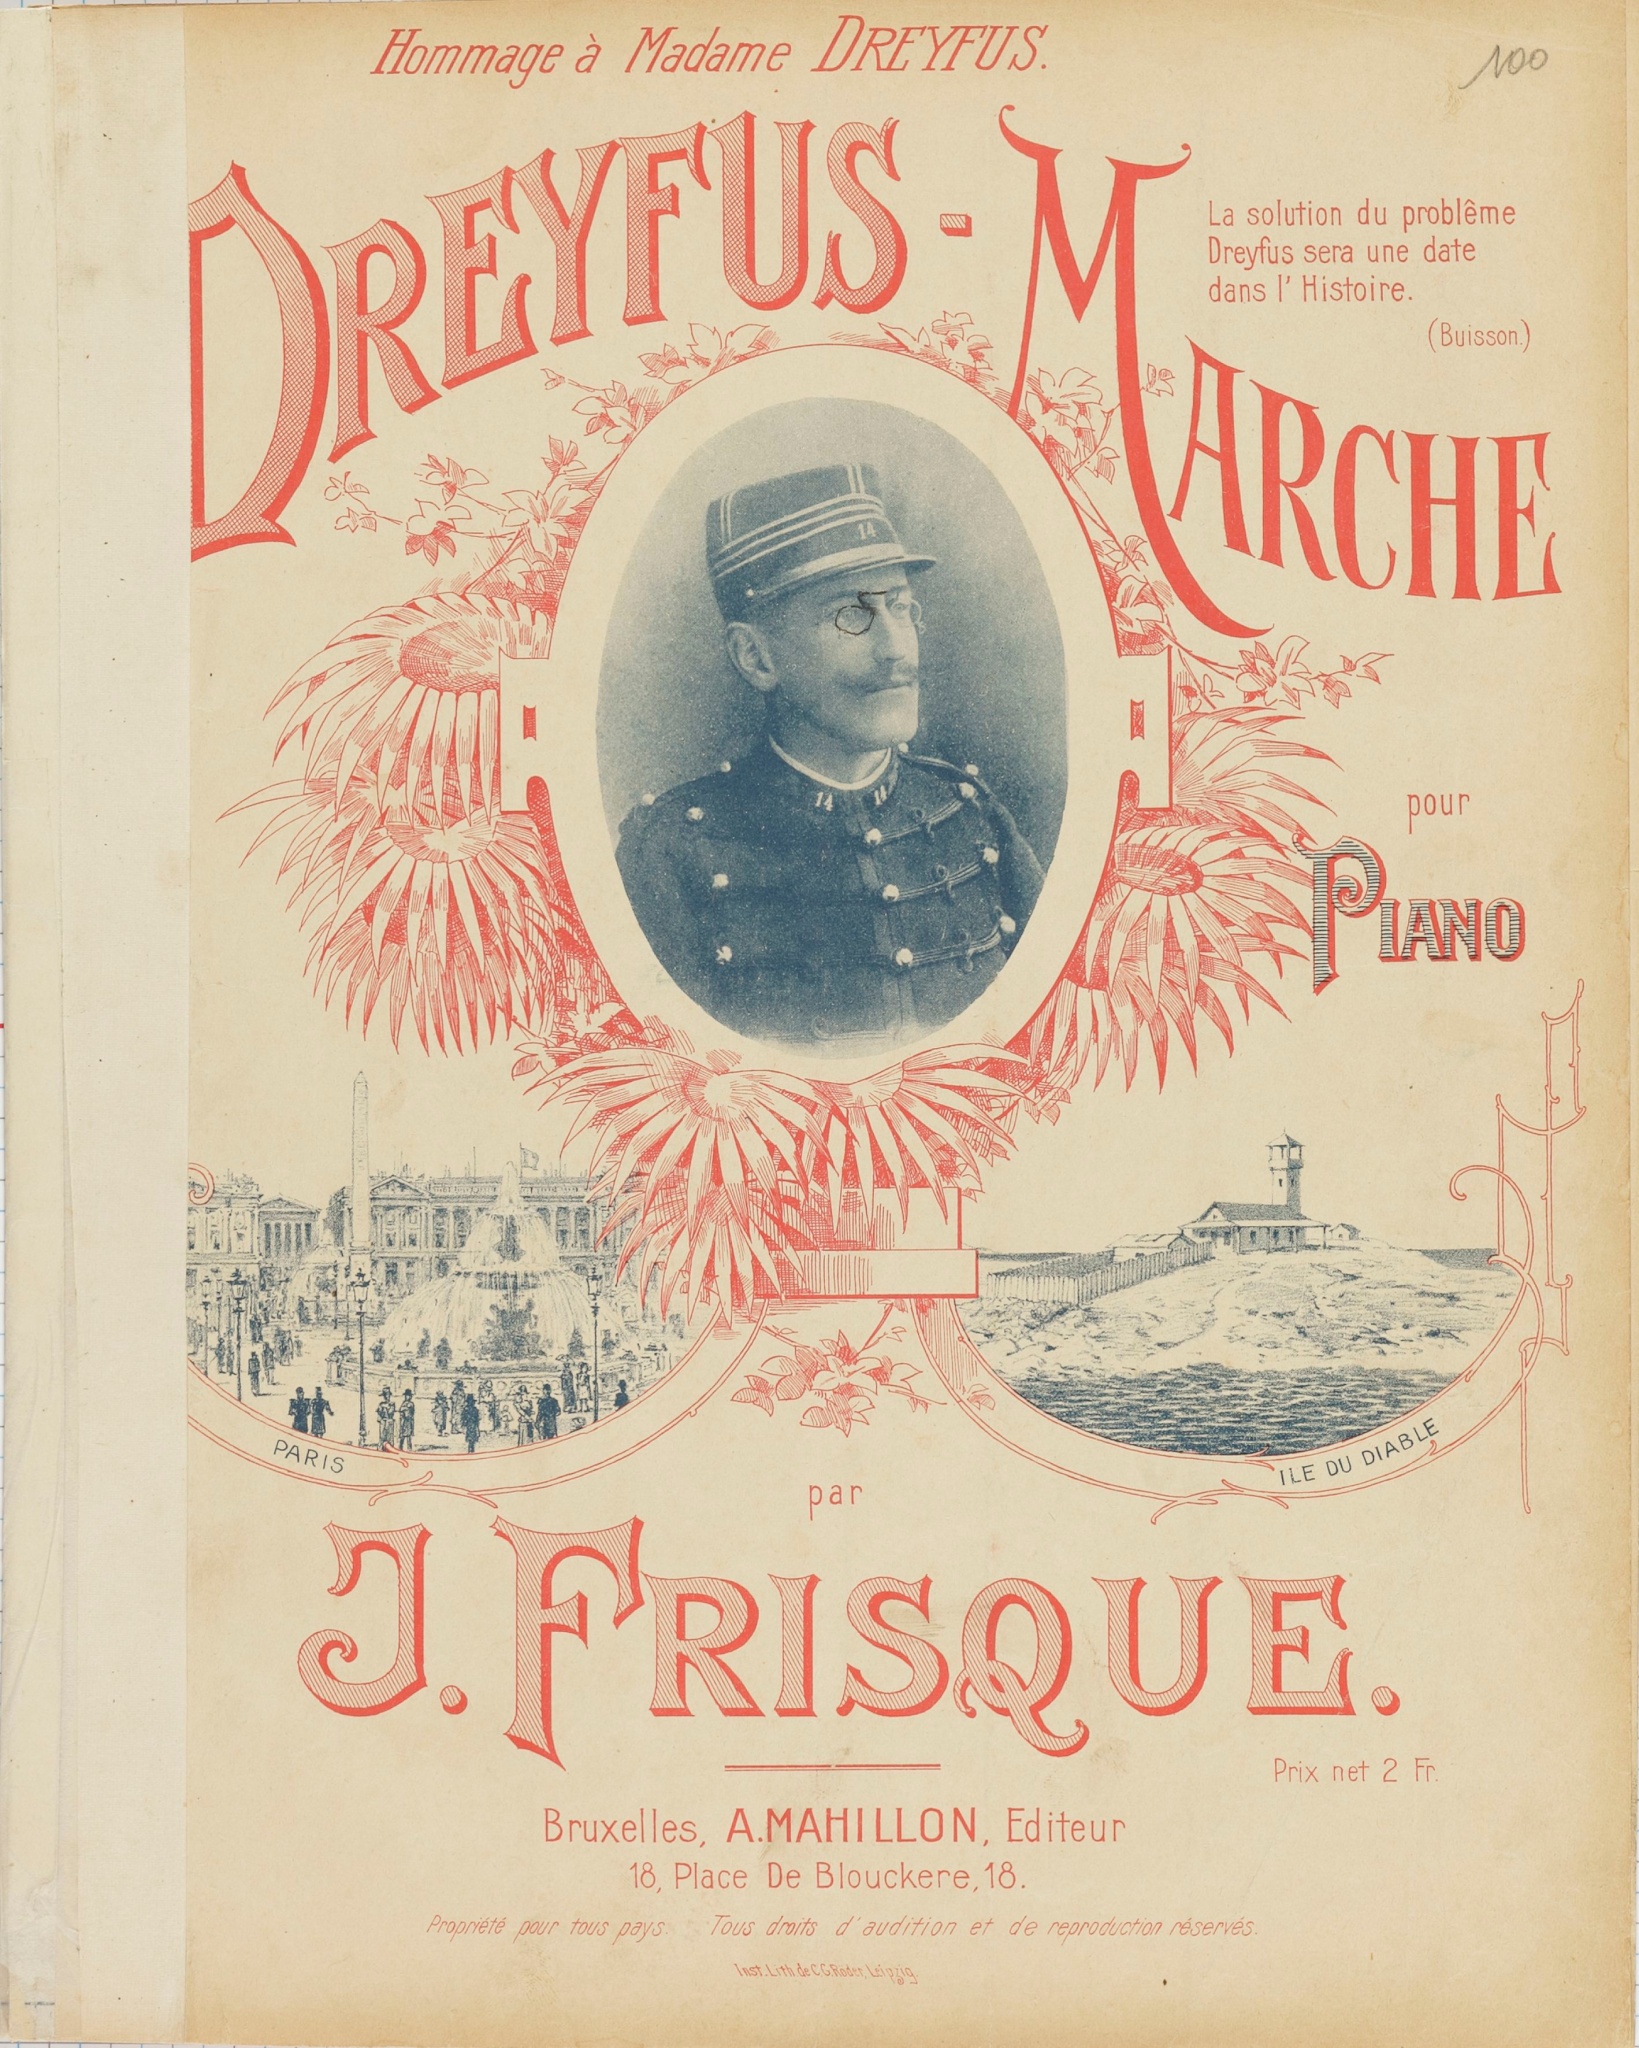 Dreyfus-Marche